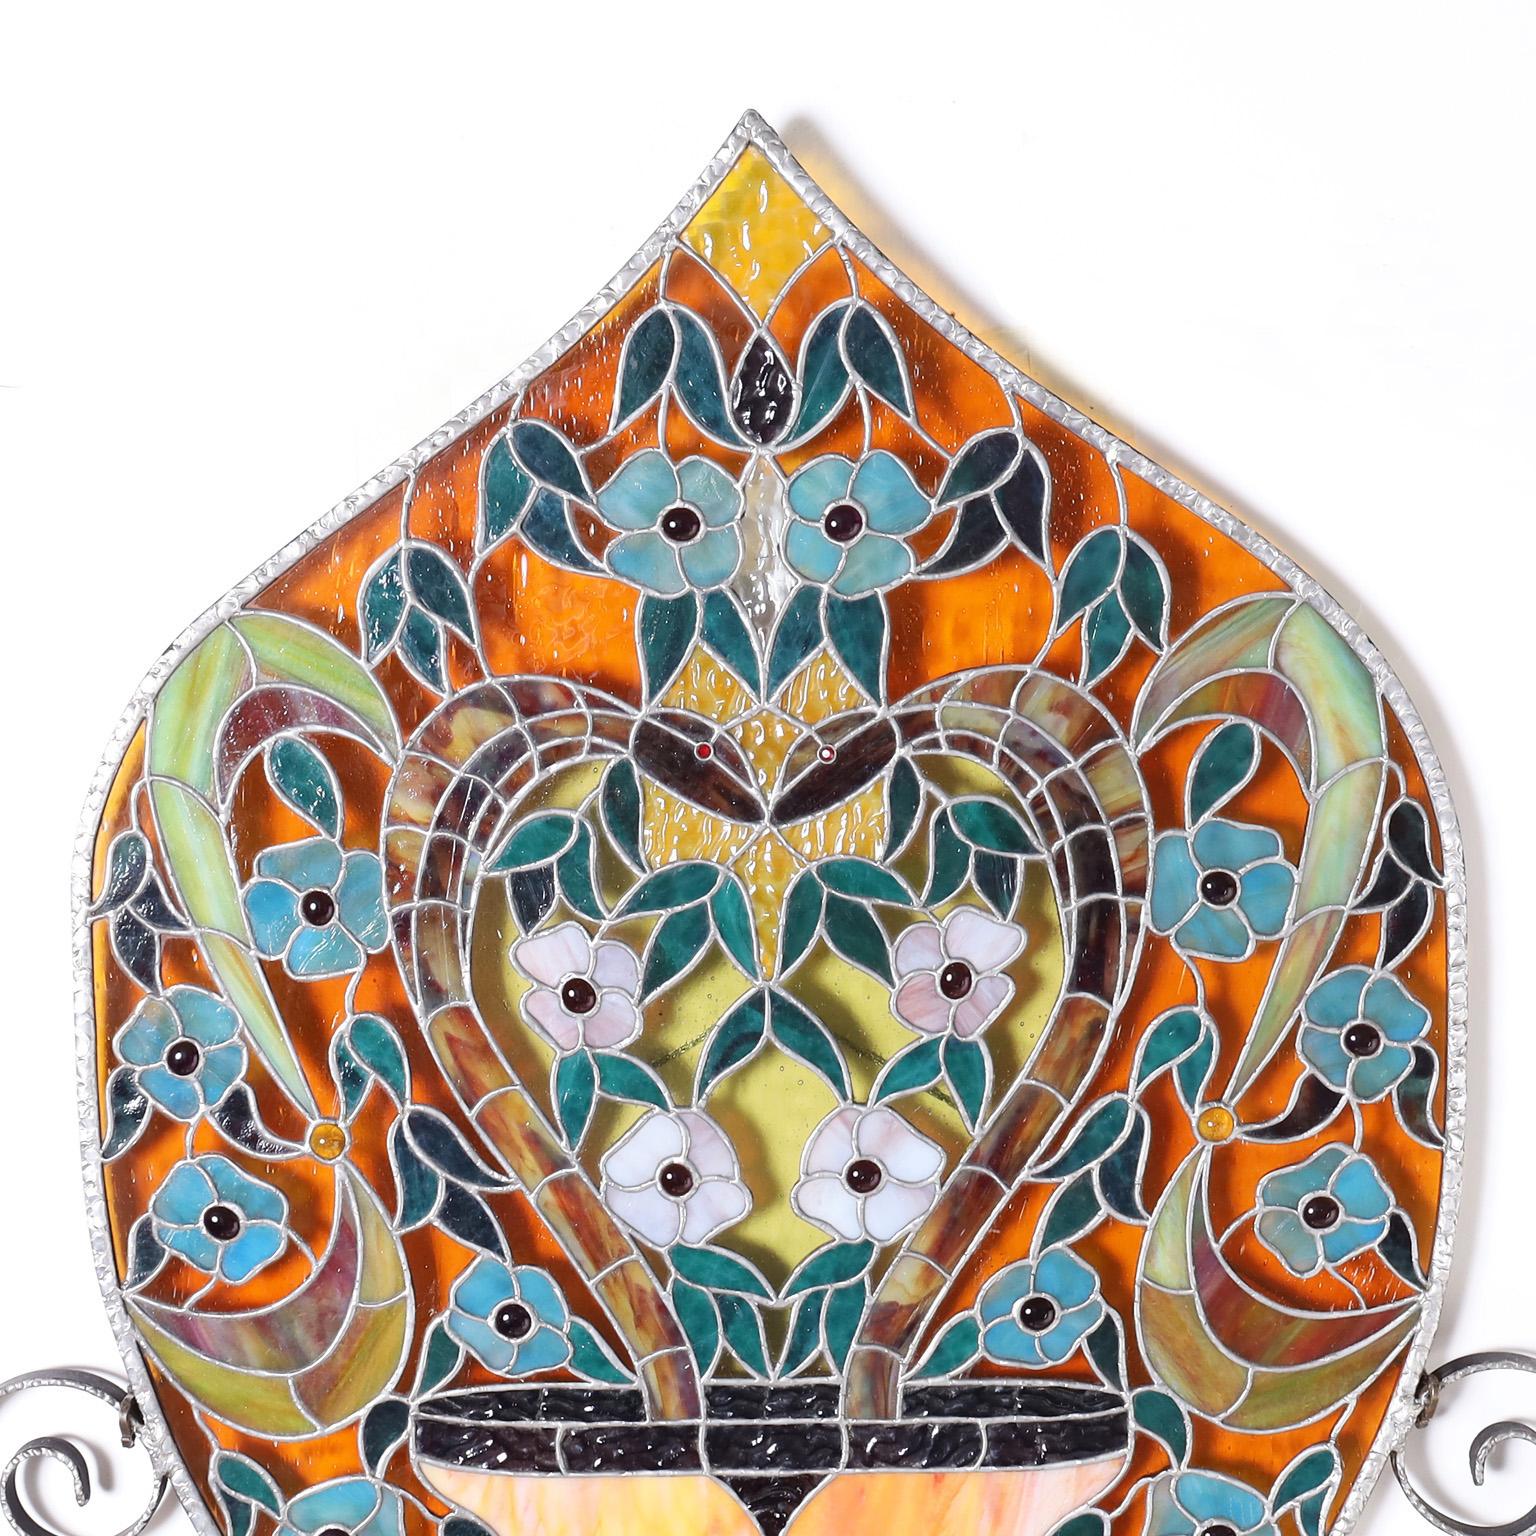 Auffällige Glasmalerei, handgefertigt in Form einer Sanduhr, in verführerischen, lebhaften Farben und mit Juwelen in einem festlichen Blumenmotiv hervorgehoben.